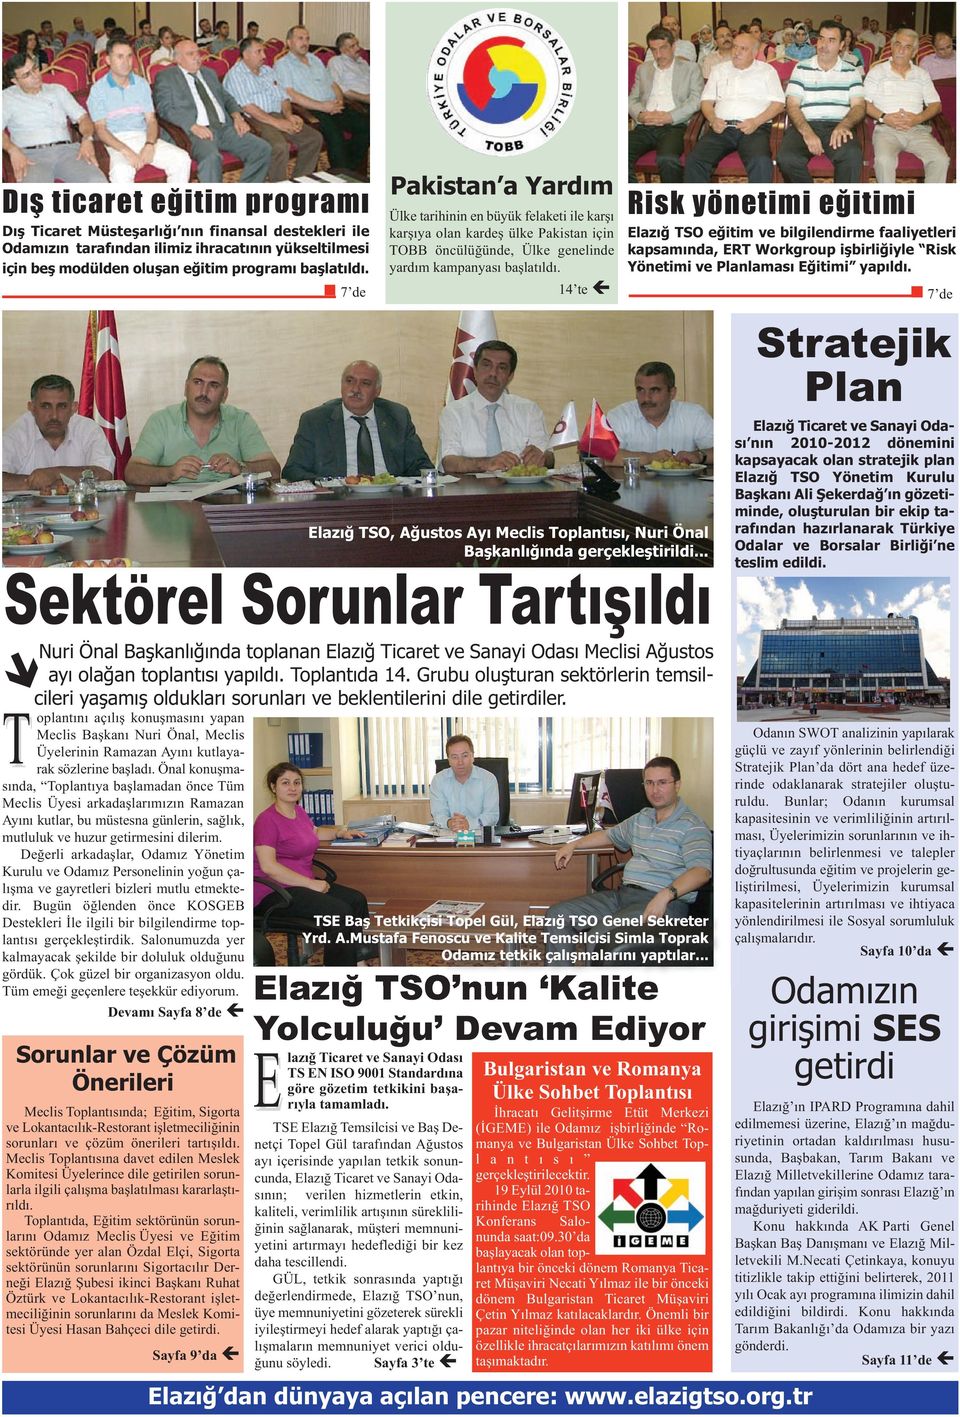 14 te TSO, Ağustos Ayı Meclis Toplantısı, Nuri Önal Başkanlığında gerçekleştirildi.